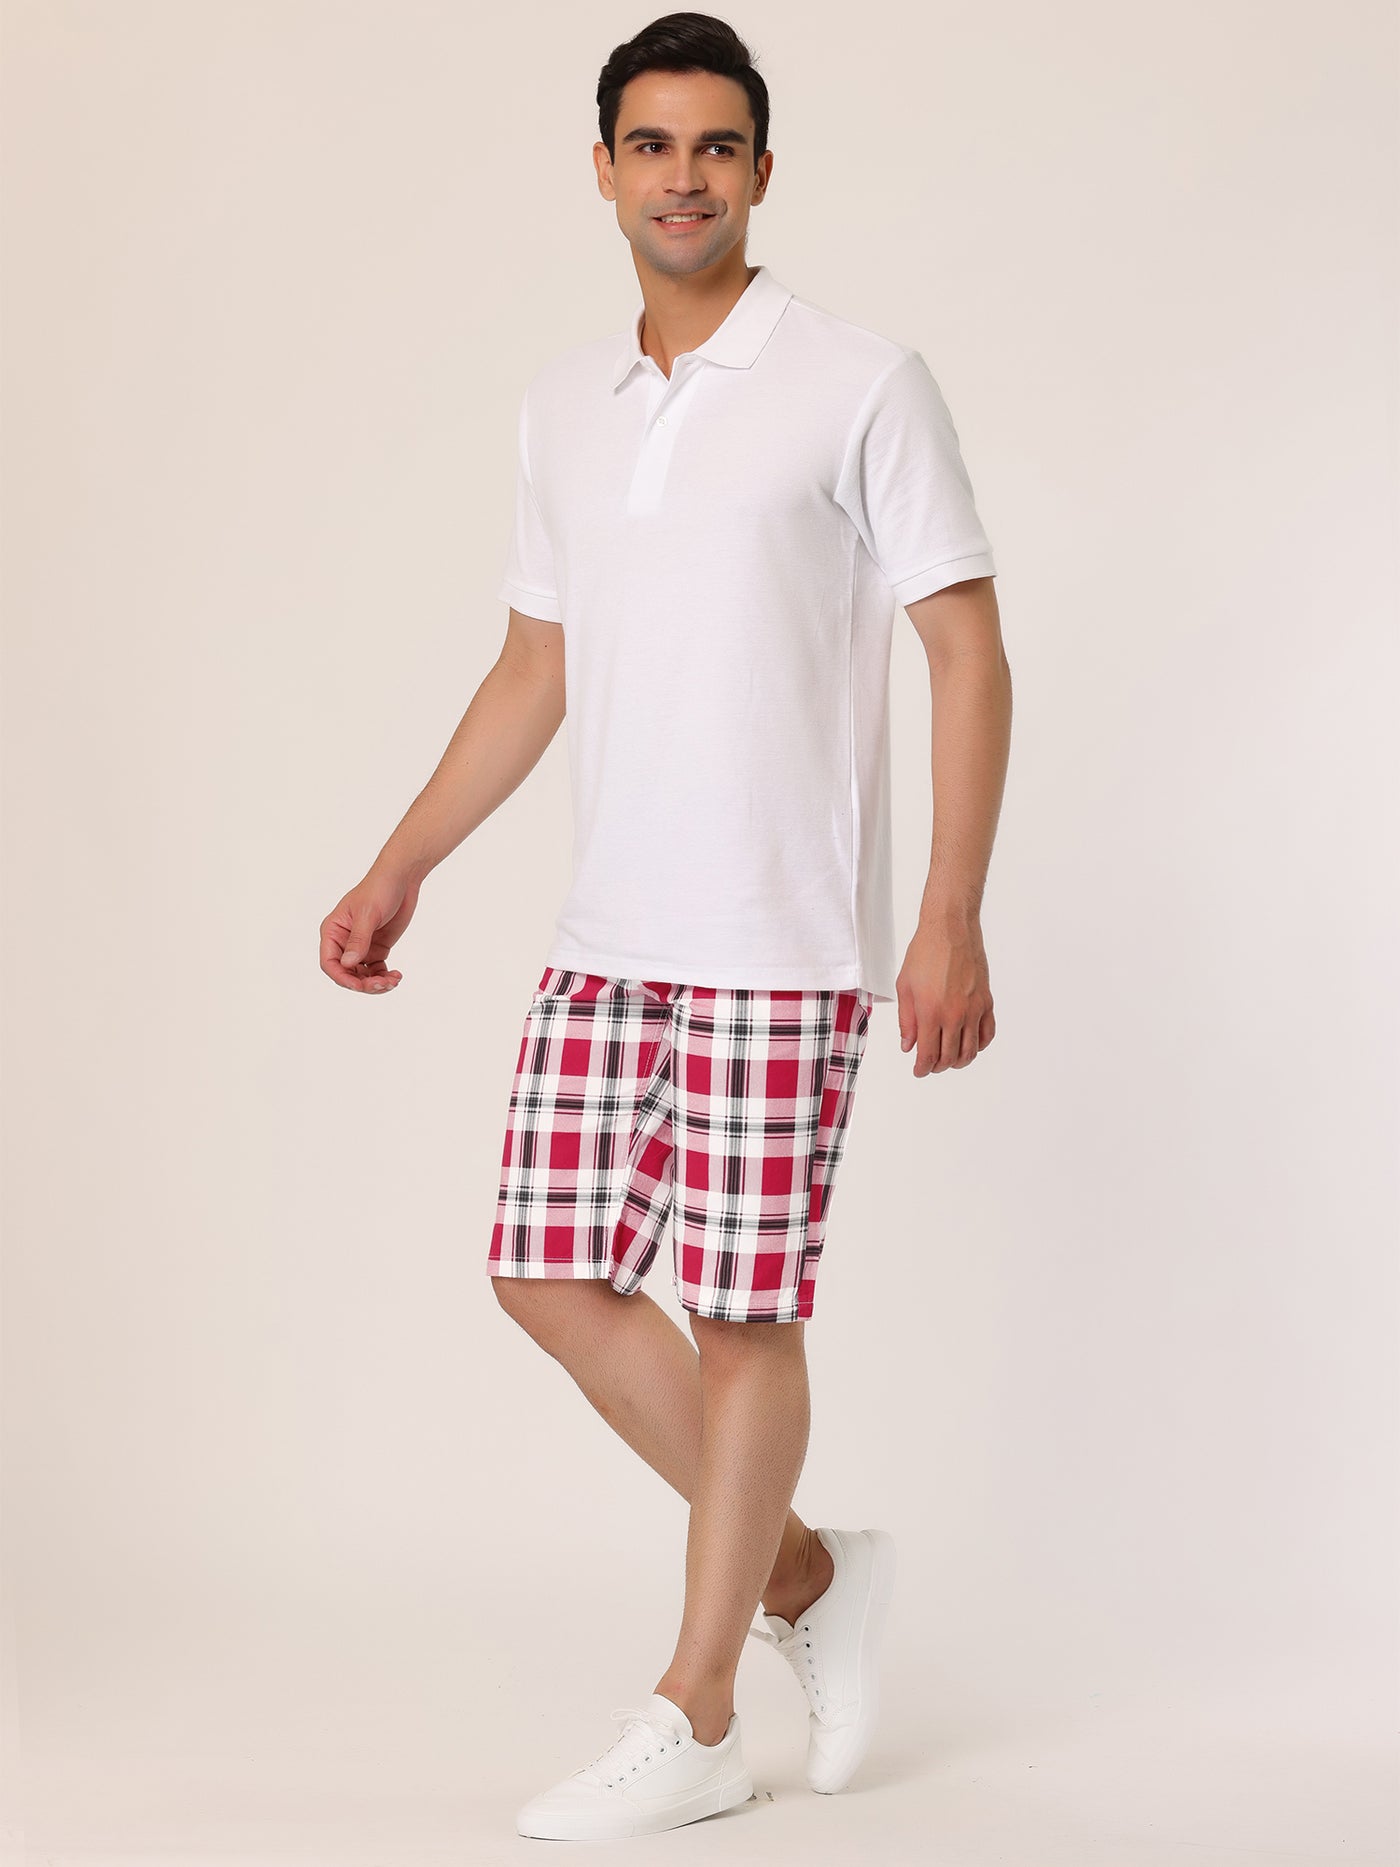 Bublédon Men's Summer Plaid Shorts Slim Fit Flat Front Pattern Pants